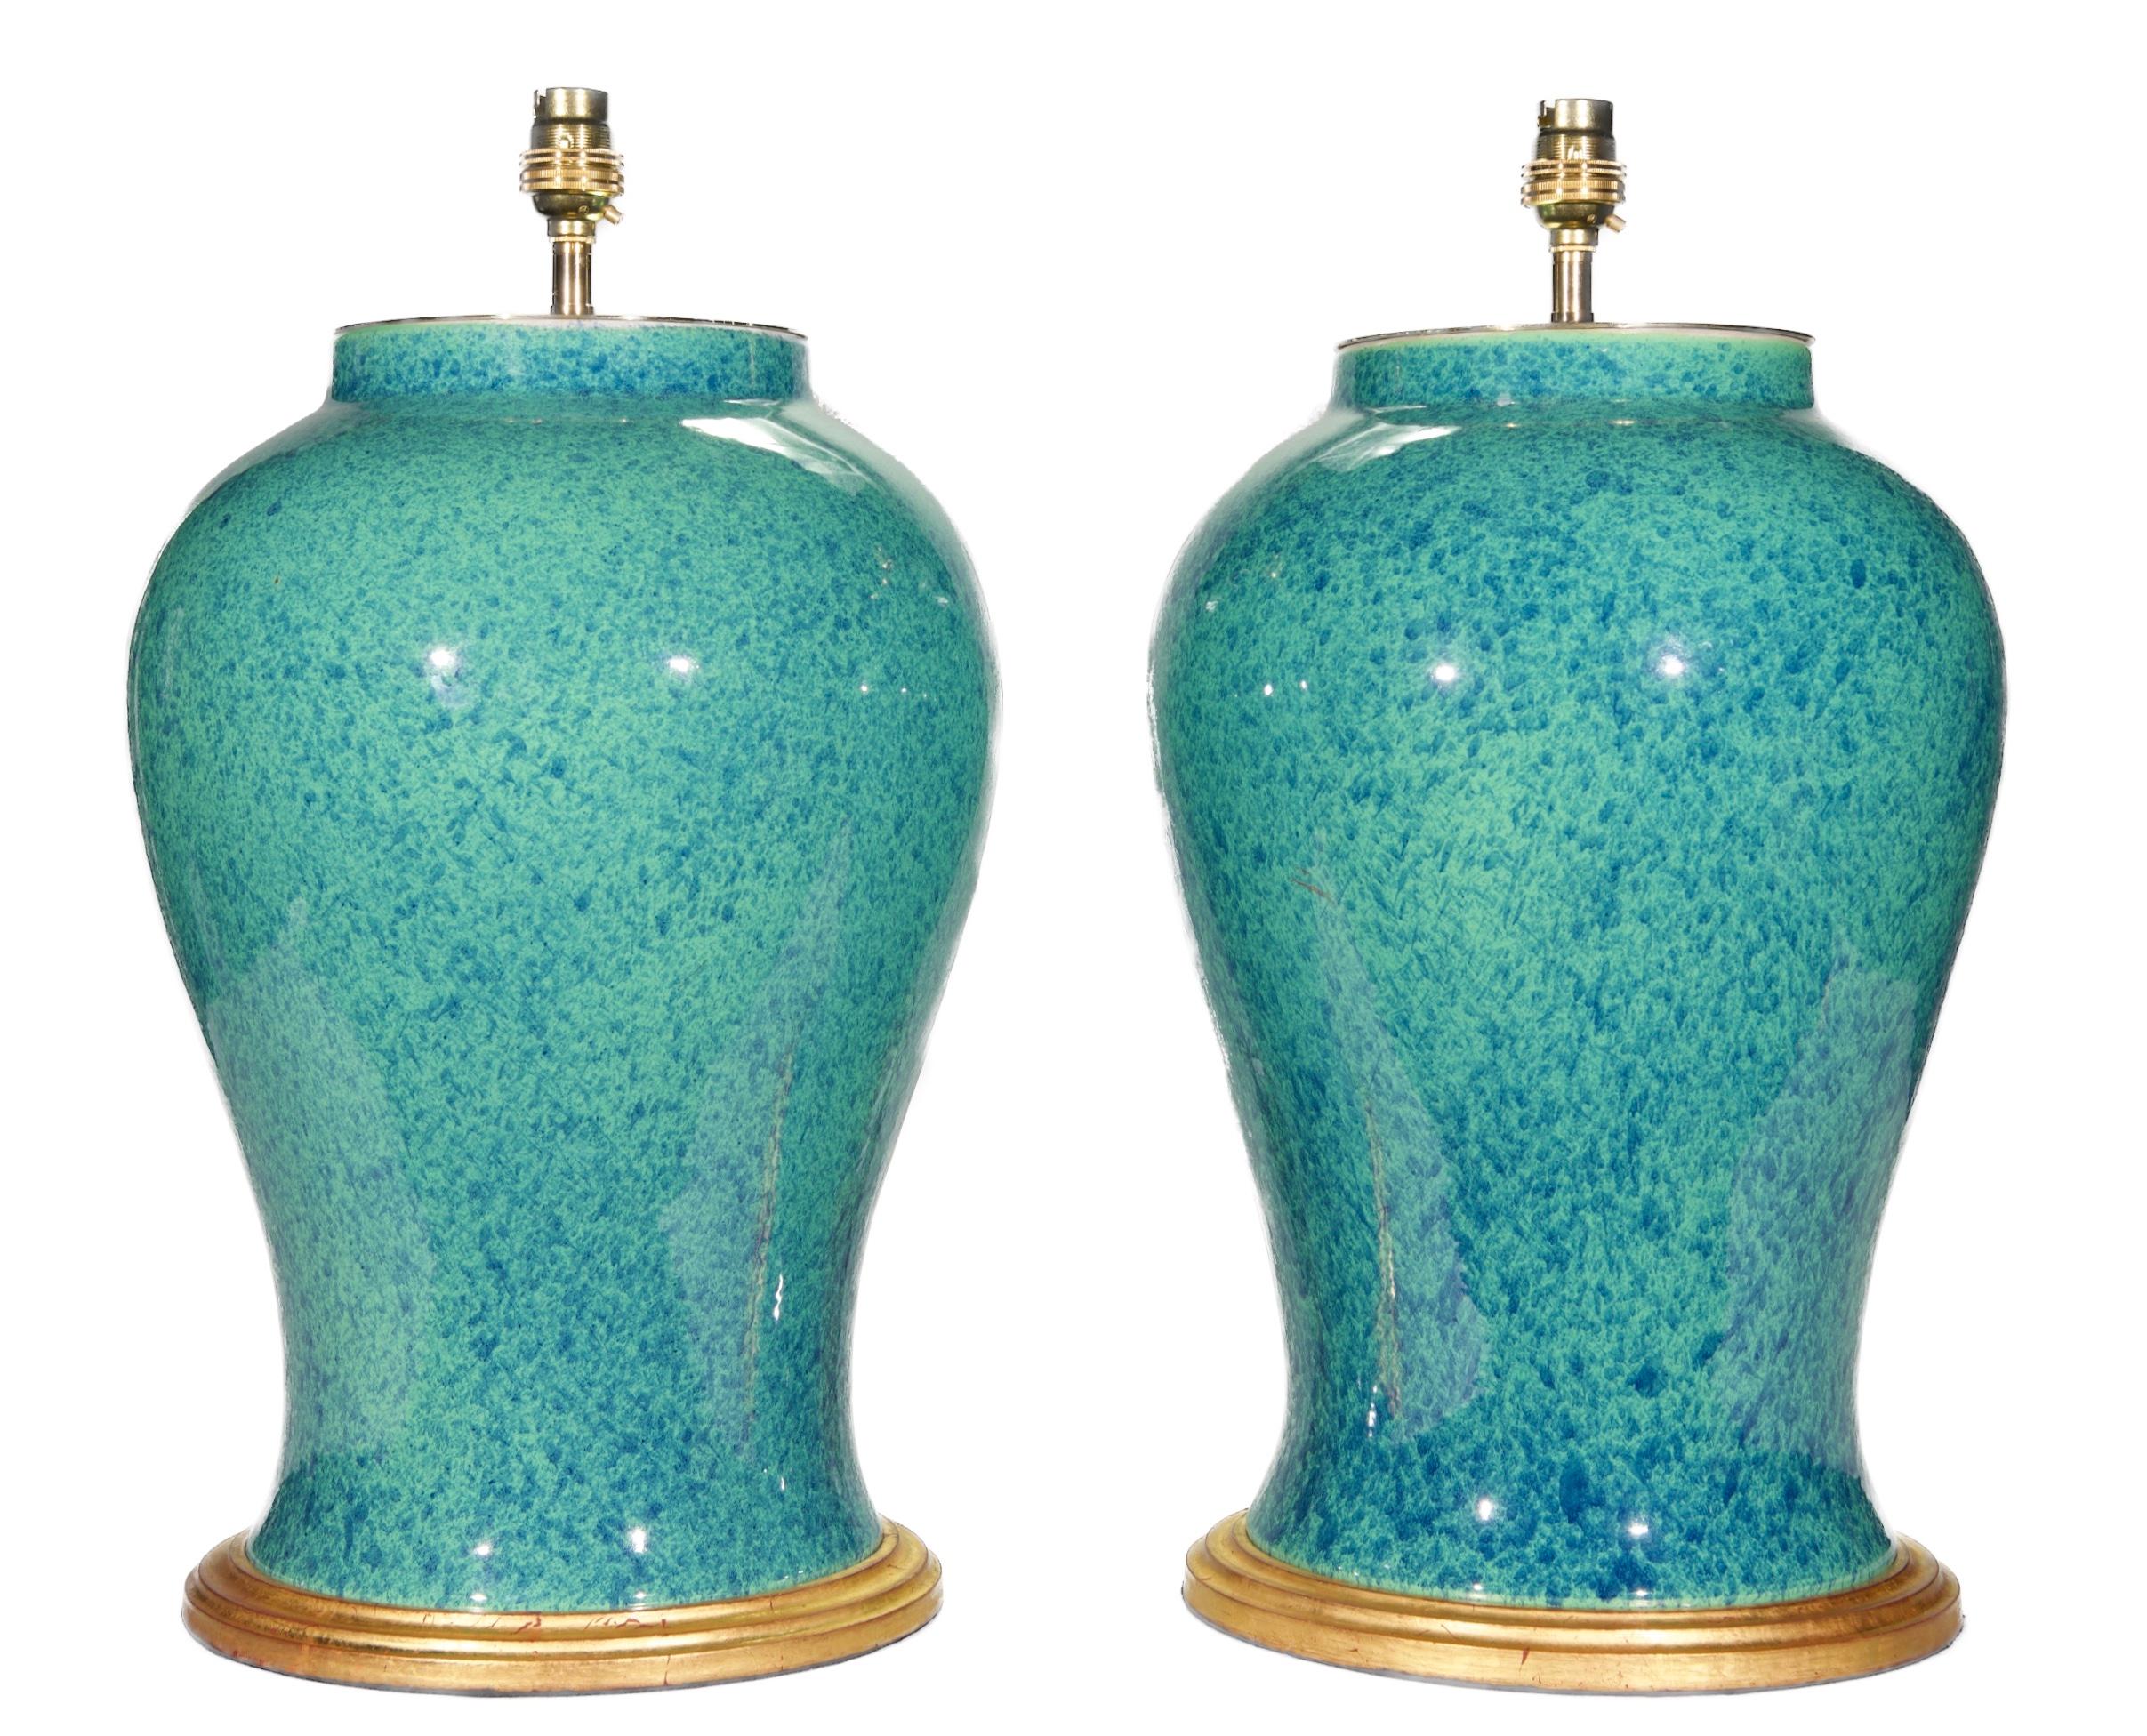 Ein feines Paar chinesischer Tempelvasen, durchgehend mit einer wunderschönen, tief gesprenkelten, rot-eierblauen Glasur verziert, jetzt als Lampen mit handvergoldeten Sockeln montiert.

Höhe der Vasen: 15 1/4 Zoll (39 cm) mit Sockeln aus